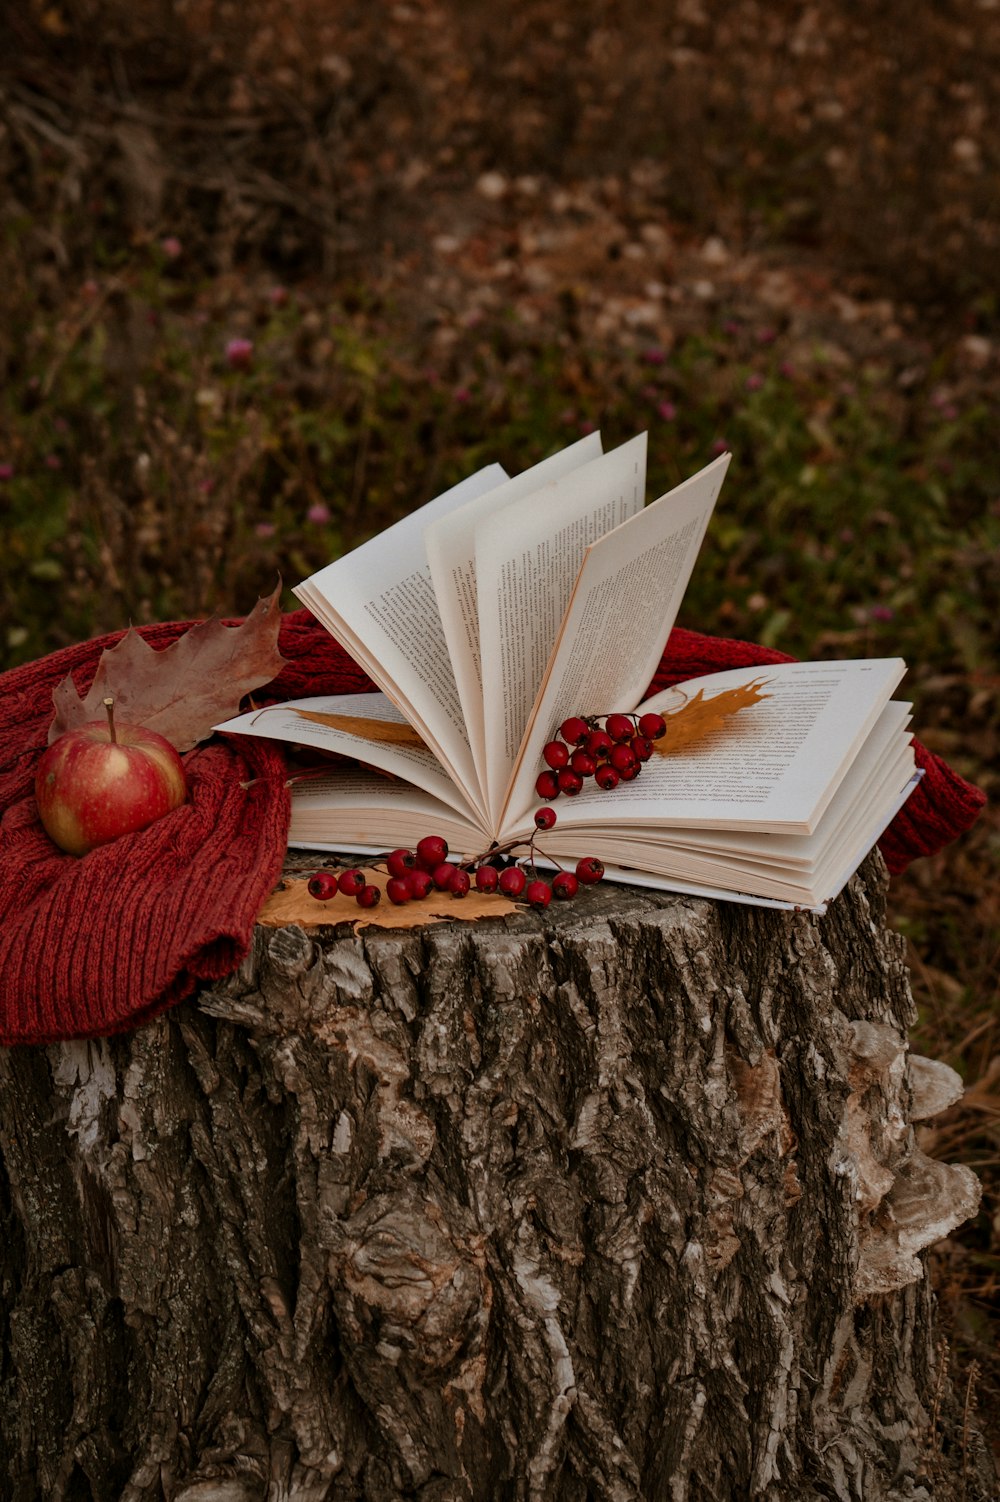 un livre ouvert sur une souche d’arbre avec une écharpe rouge dessus